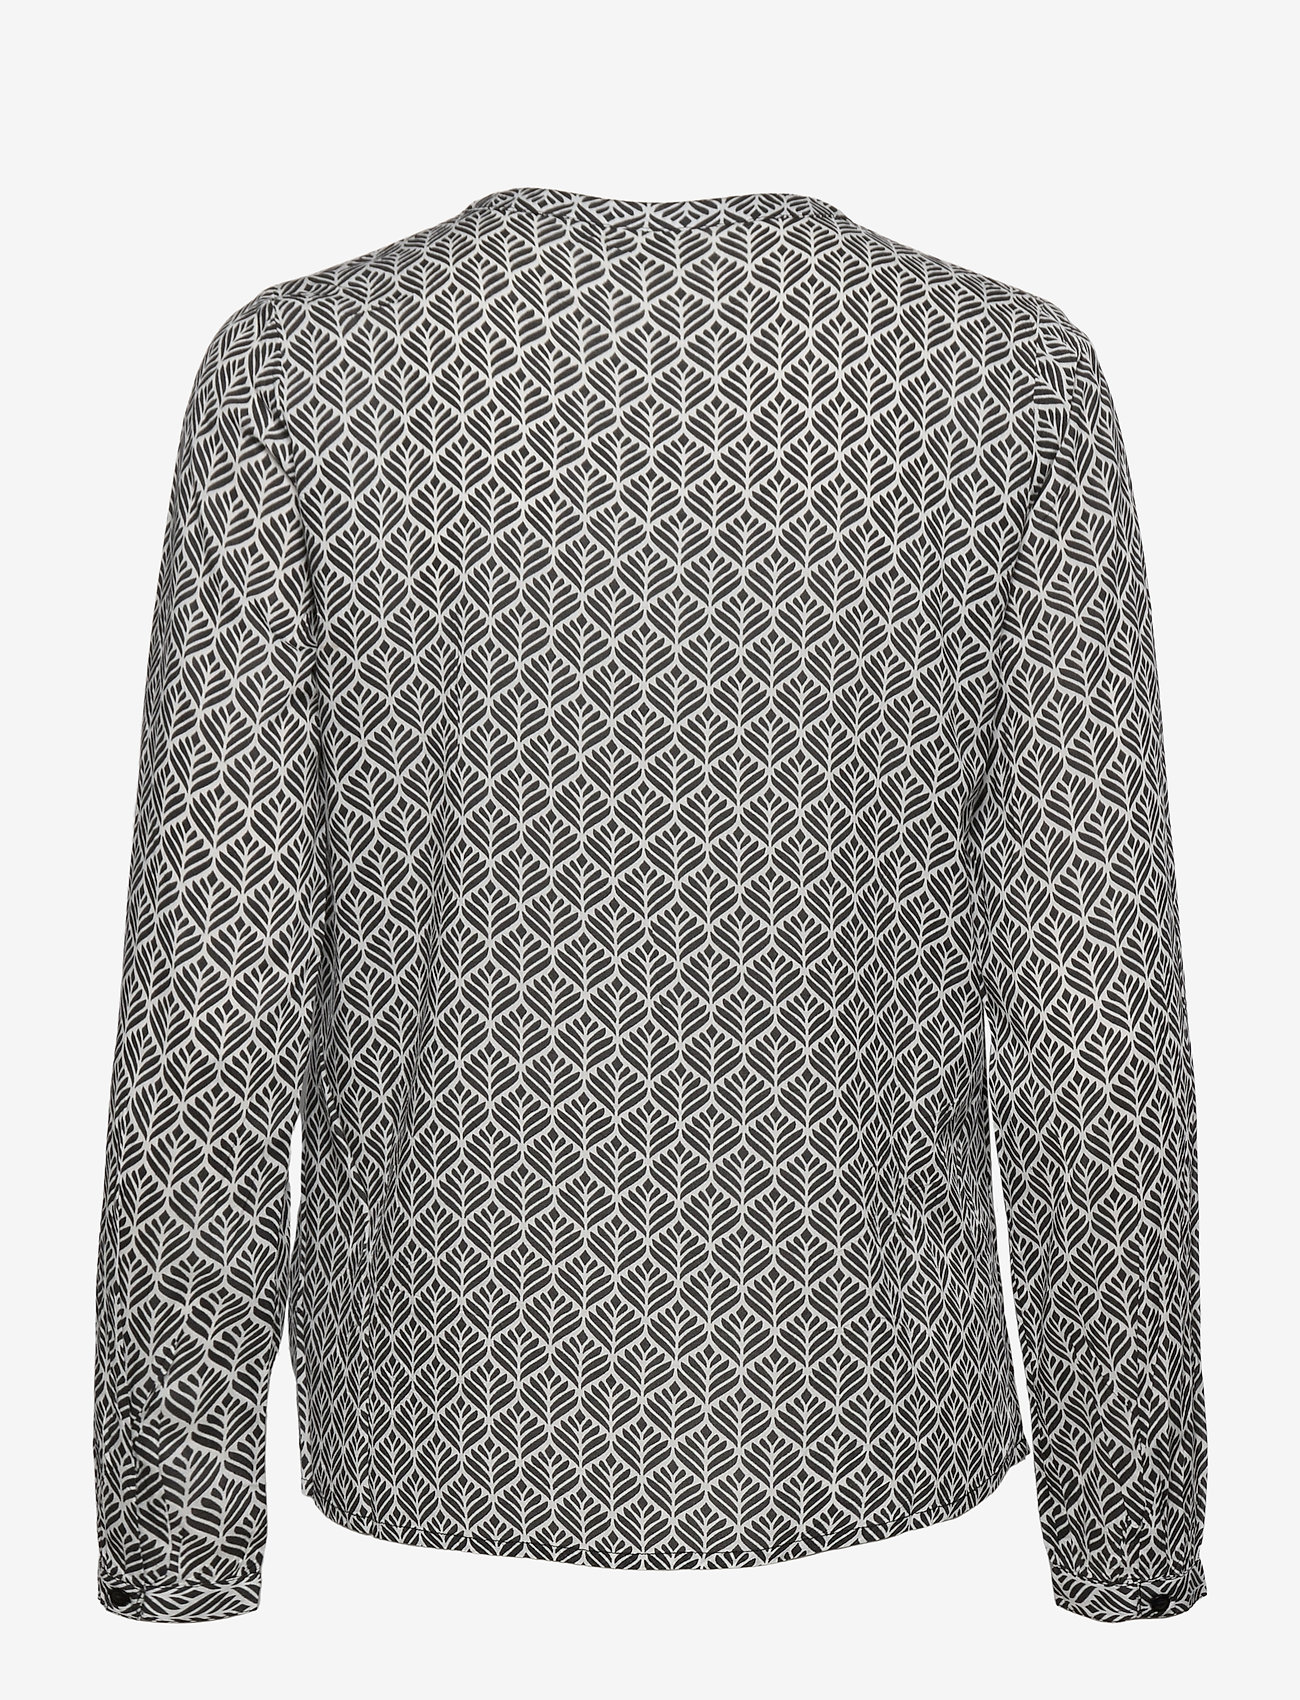 Kaffe - KAfana Tilly Blouse - blouses met lange mouwen - black / chalk fan print - 1